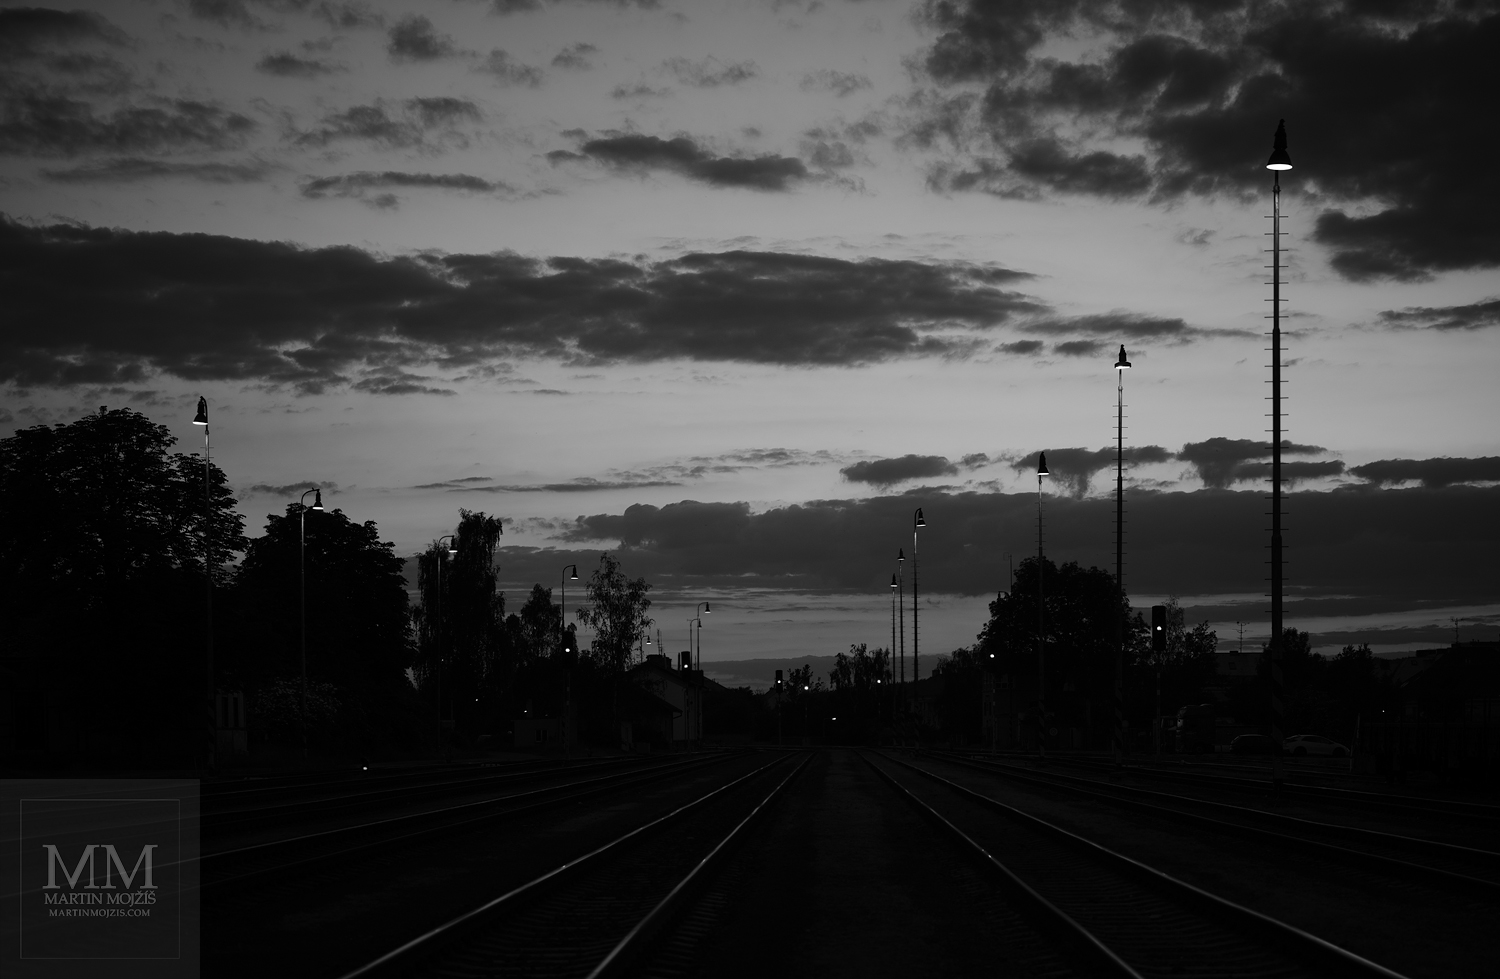 Večerní železniční nádraží. Umělecká černobílá fotografie s názvem DOTEKY VEČERNÍHO SVĚTLA. Fotograf Martin Mojžíš.